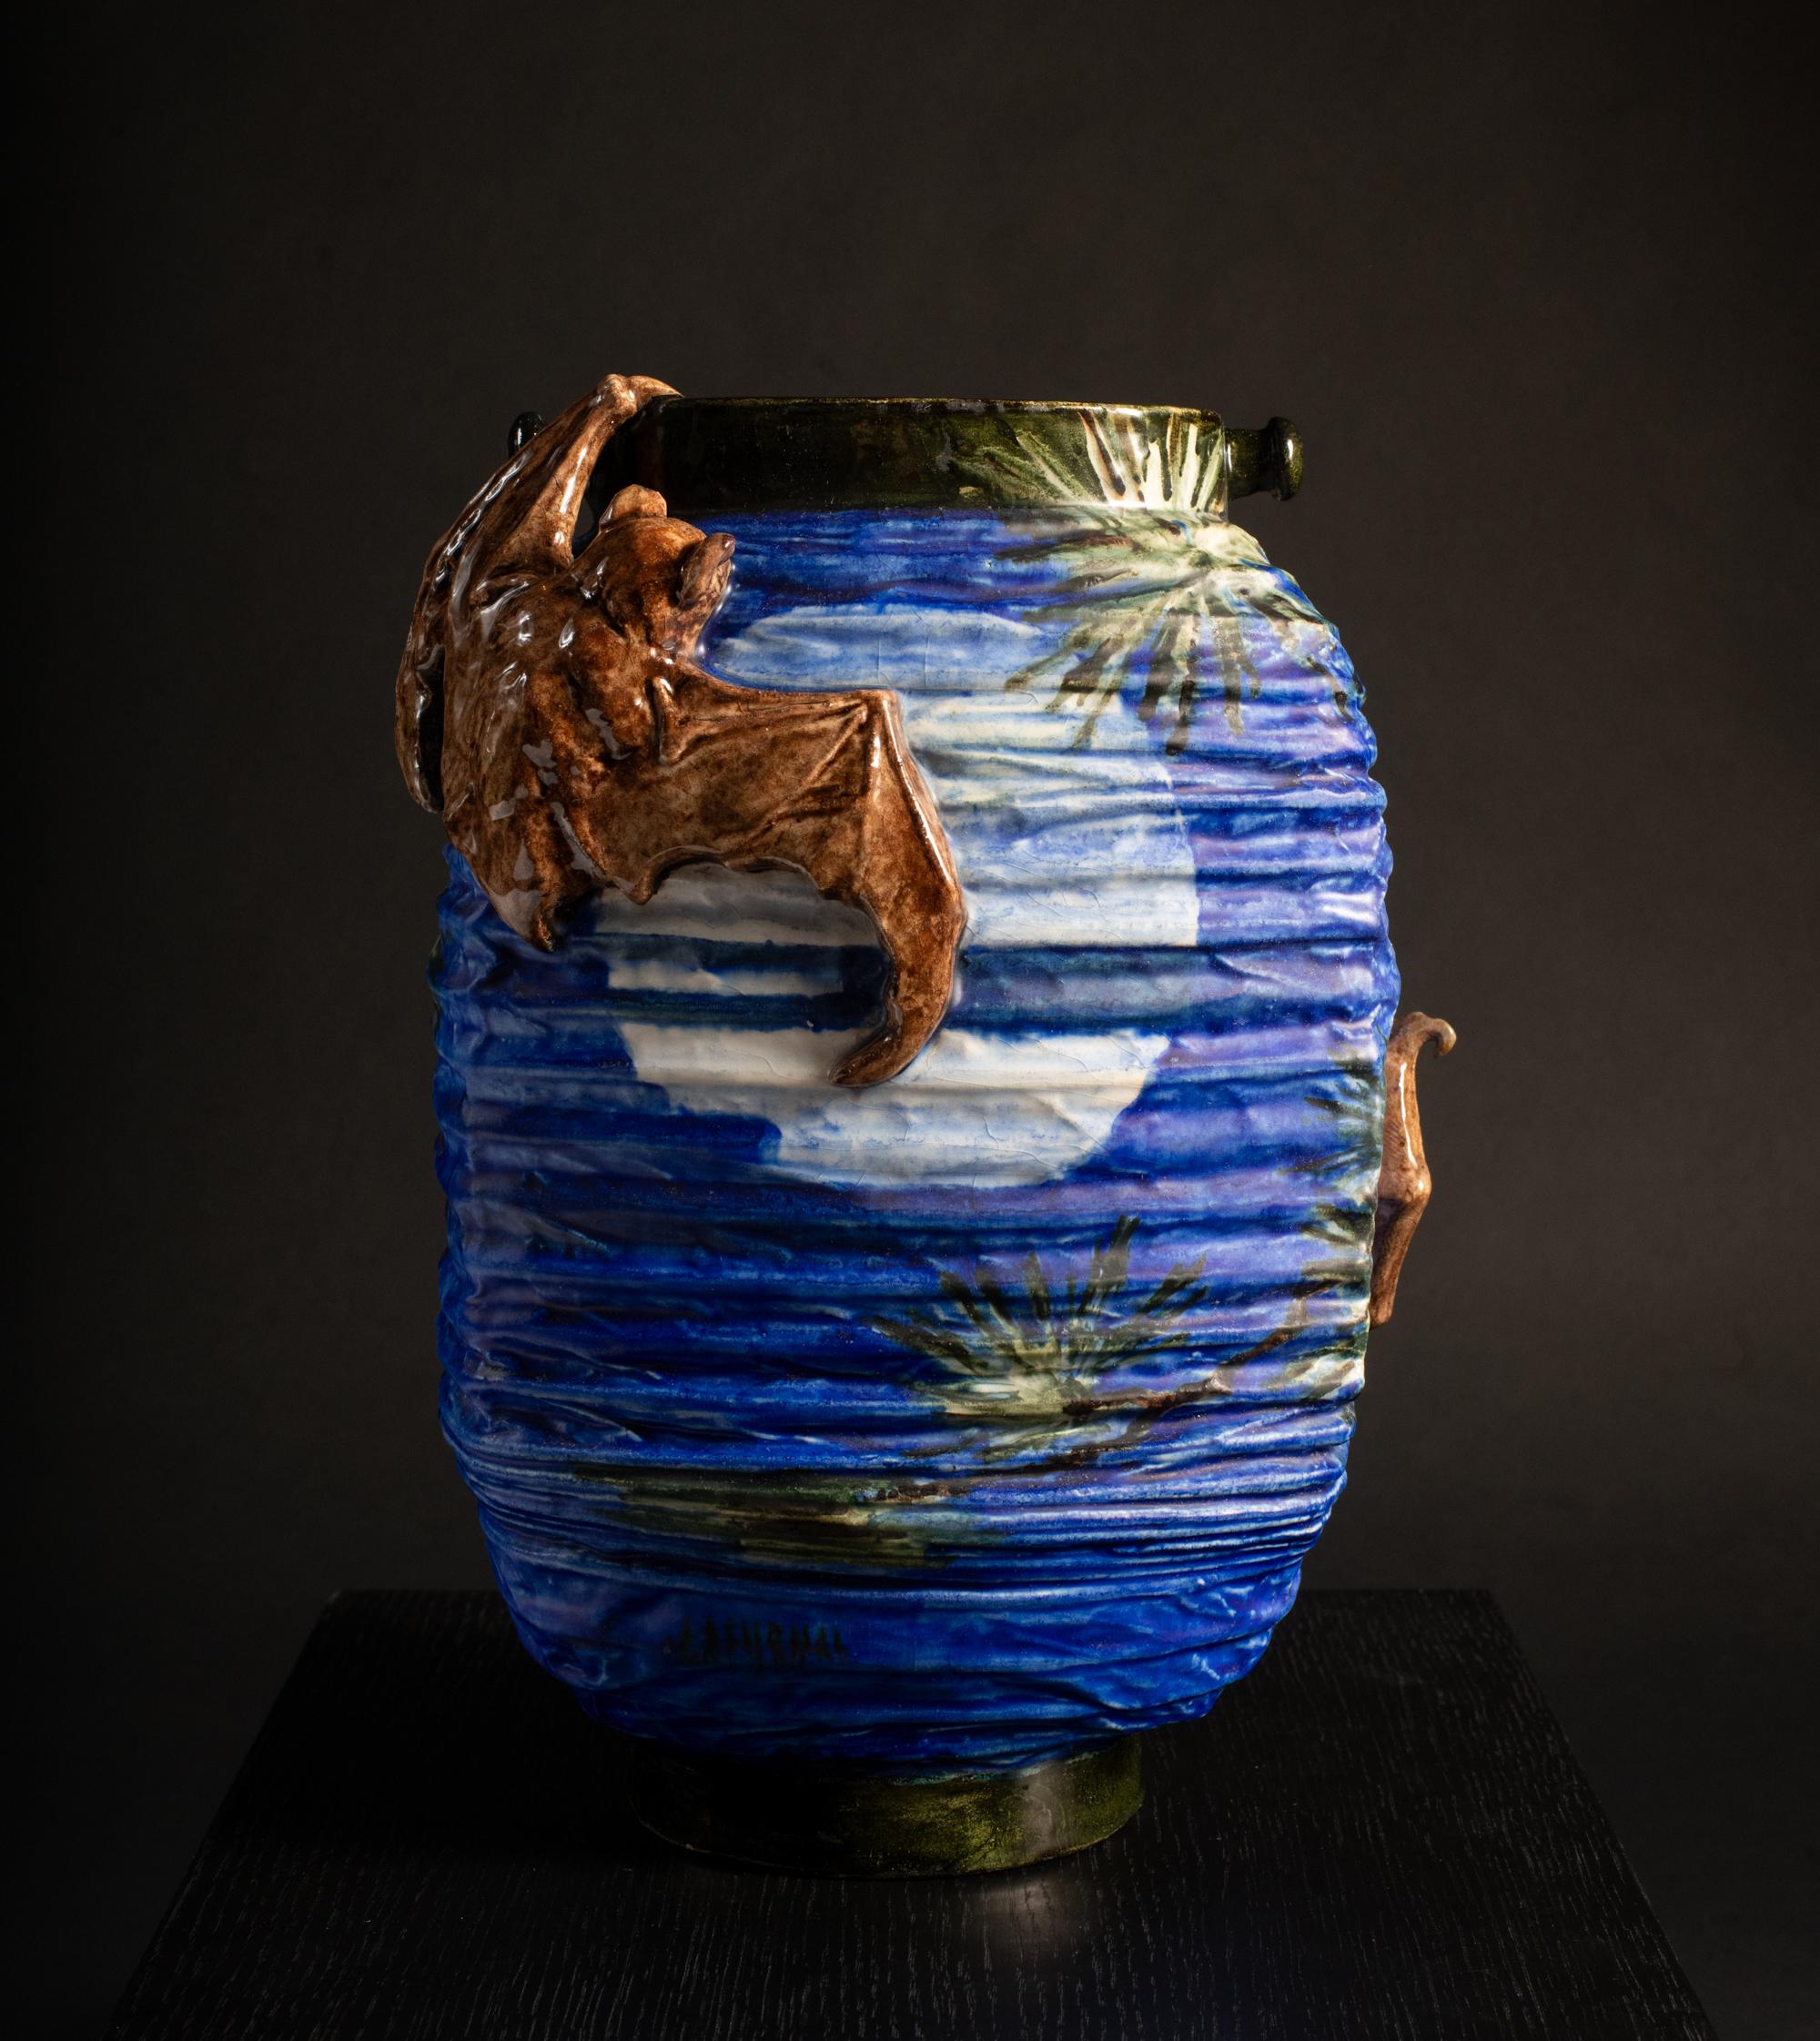 Lantern-Shaped Art Nouveau Vase with Bats & Moon by Edmond Lachenal For Sale 1